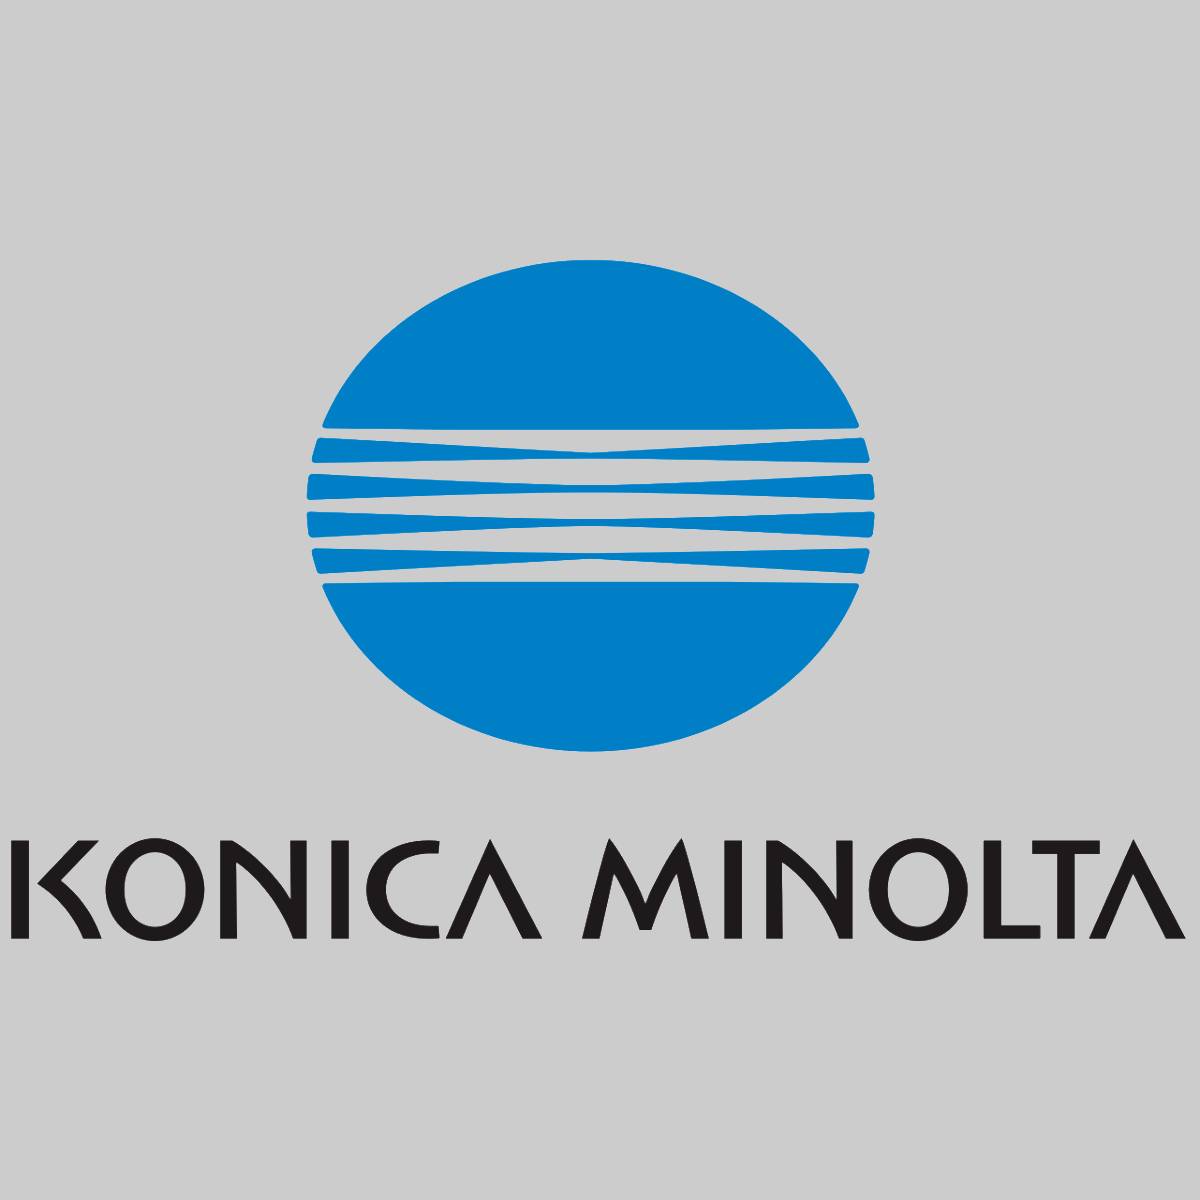 "Original Konica Minolta TNP49 Toner Magenta A95W350 for Bizhub C3351 C3851 NEW